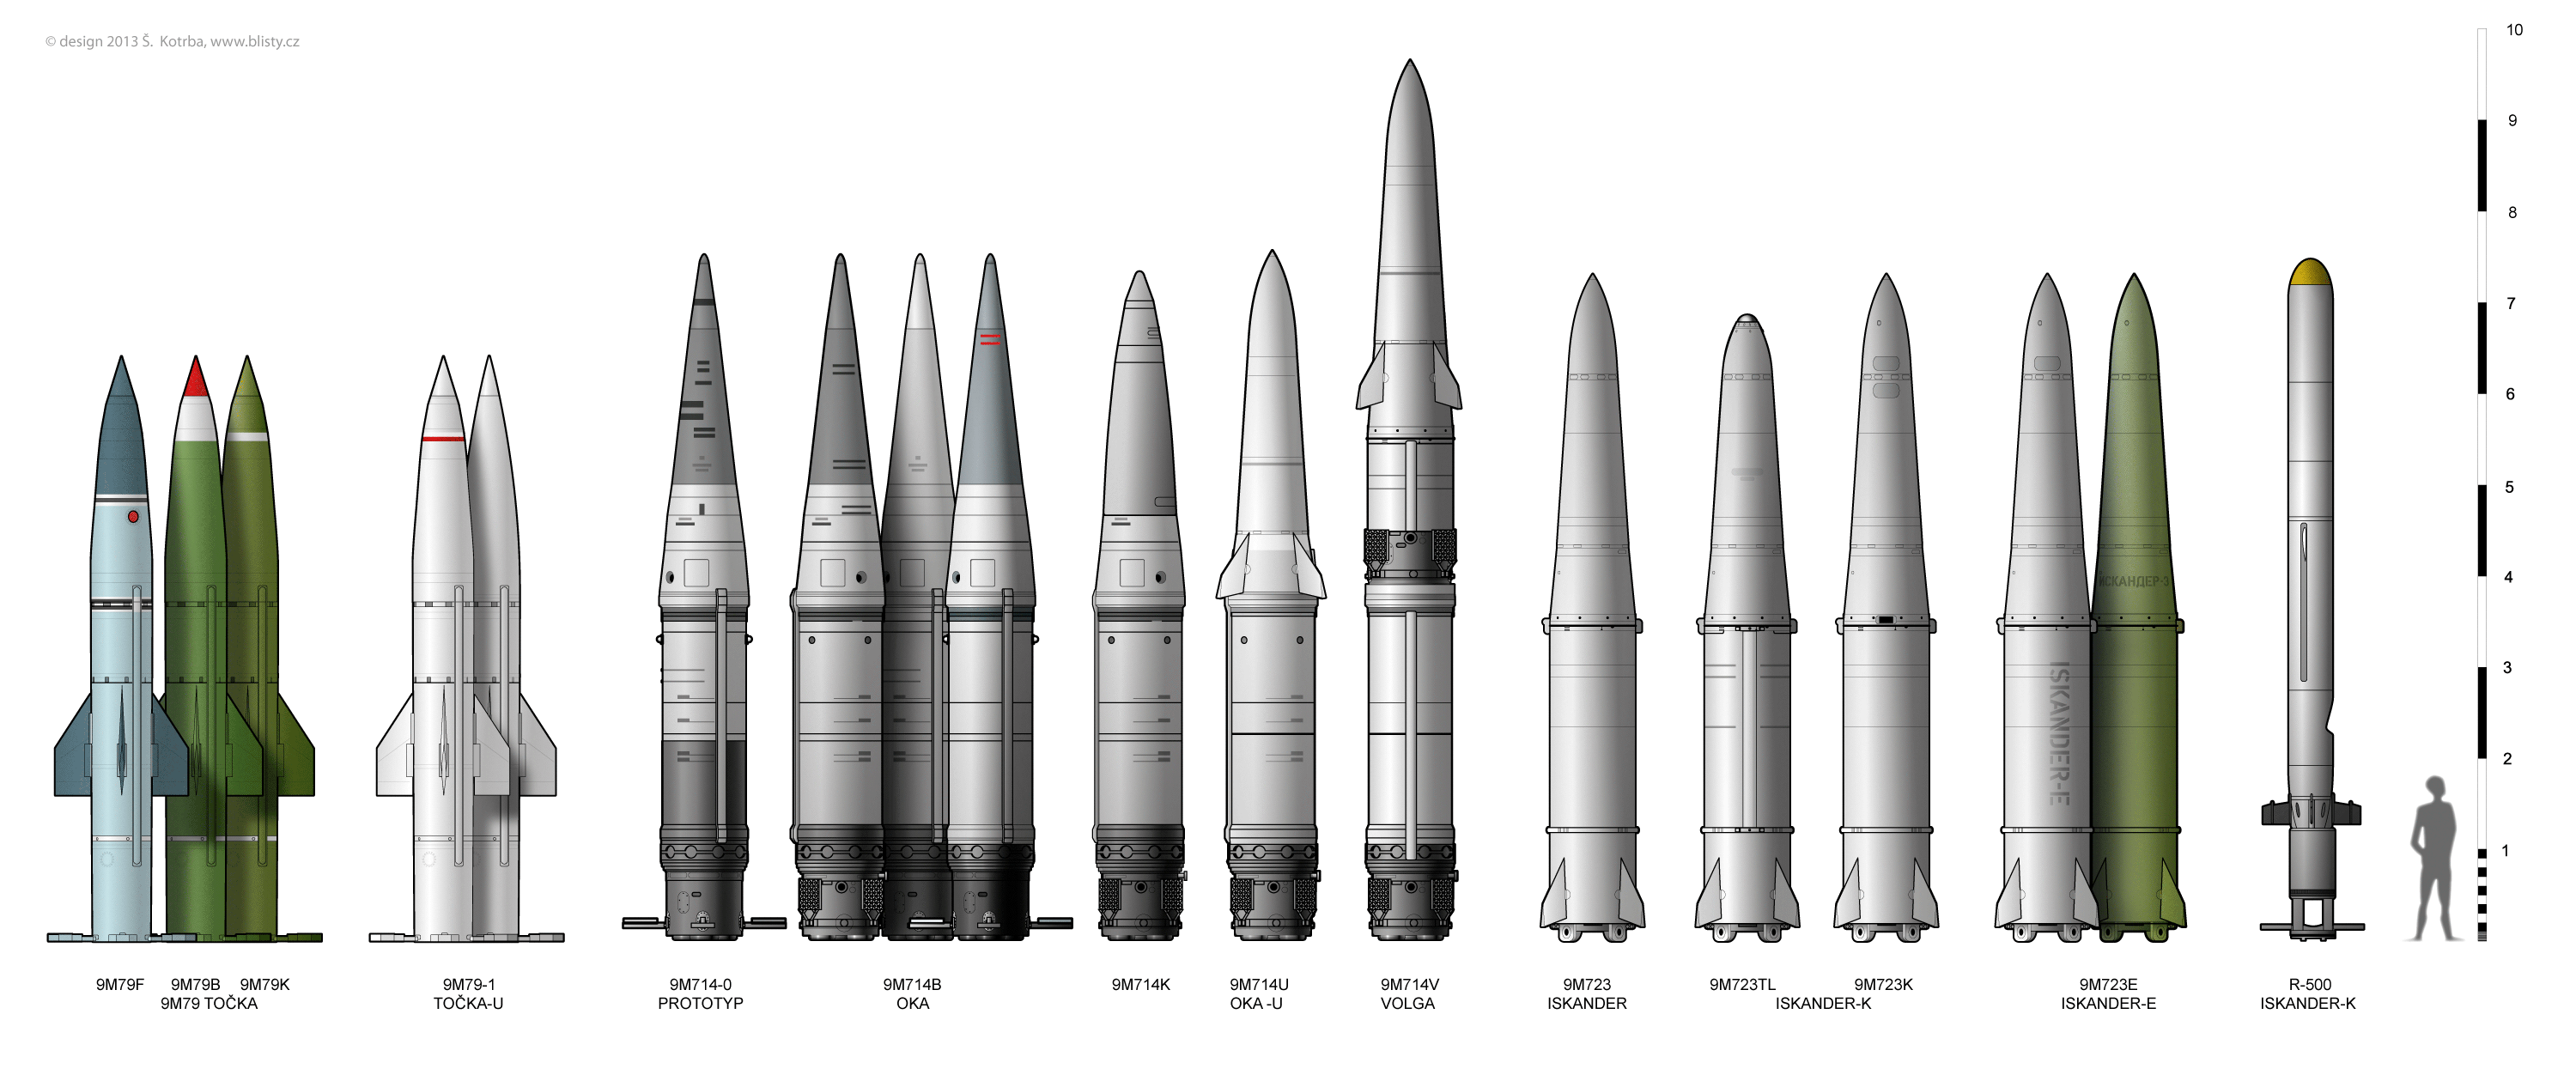 Р-15 (ракета)развитие [ править ] а также см. также [ править ]